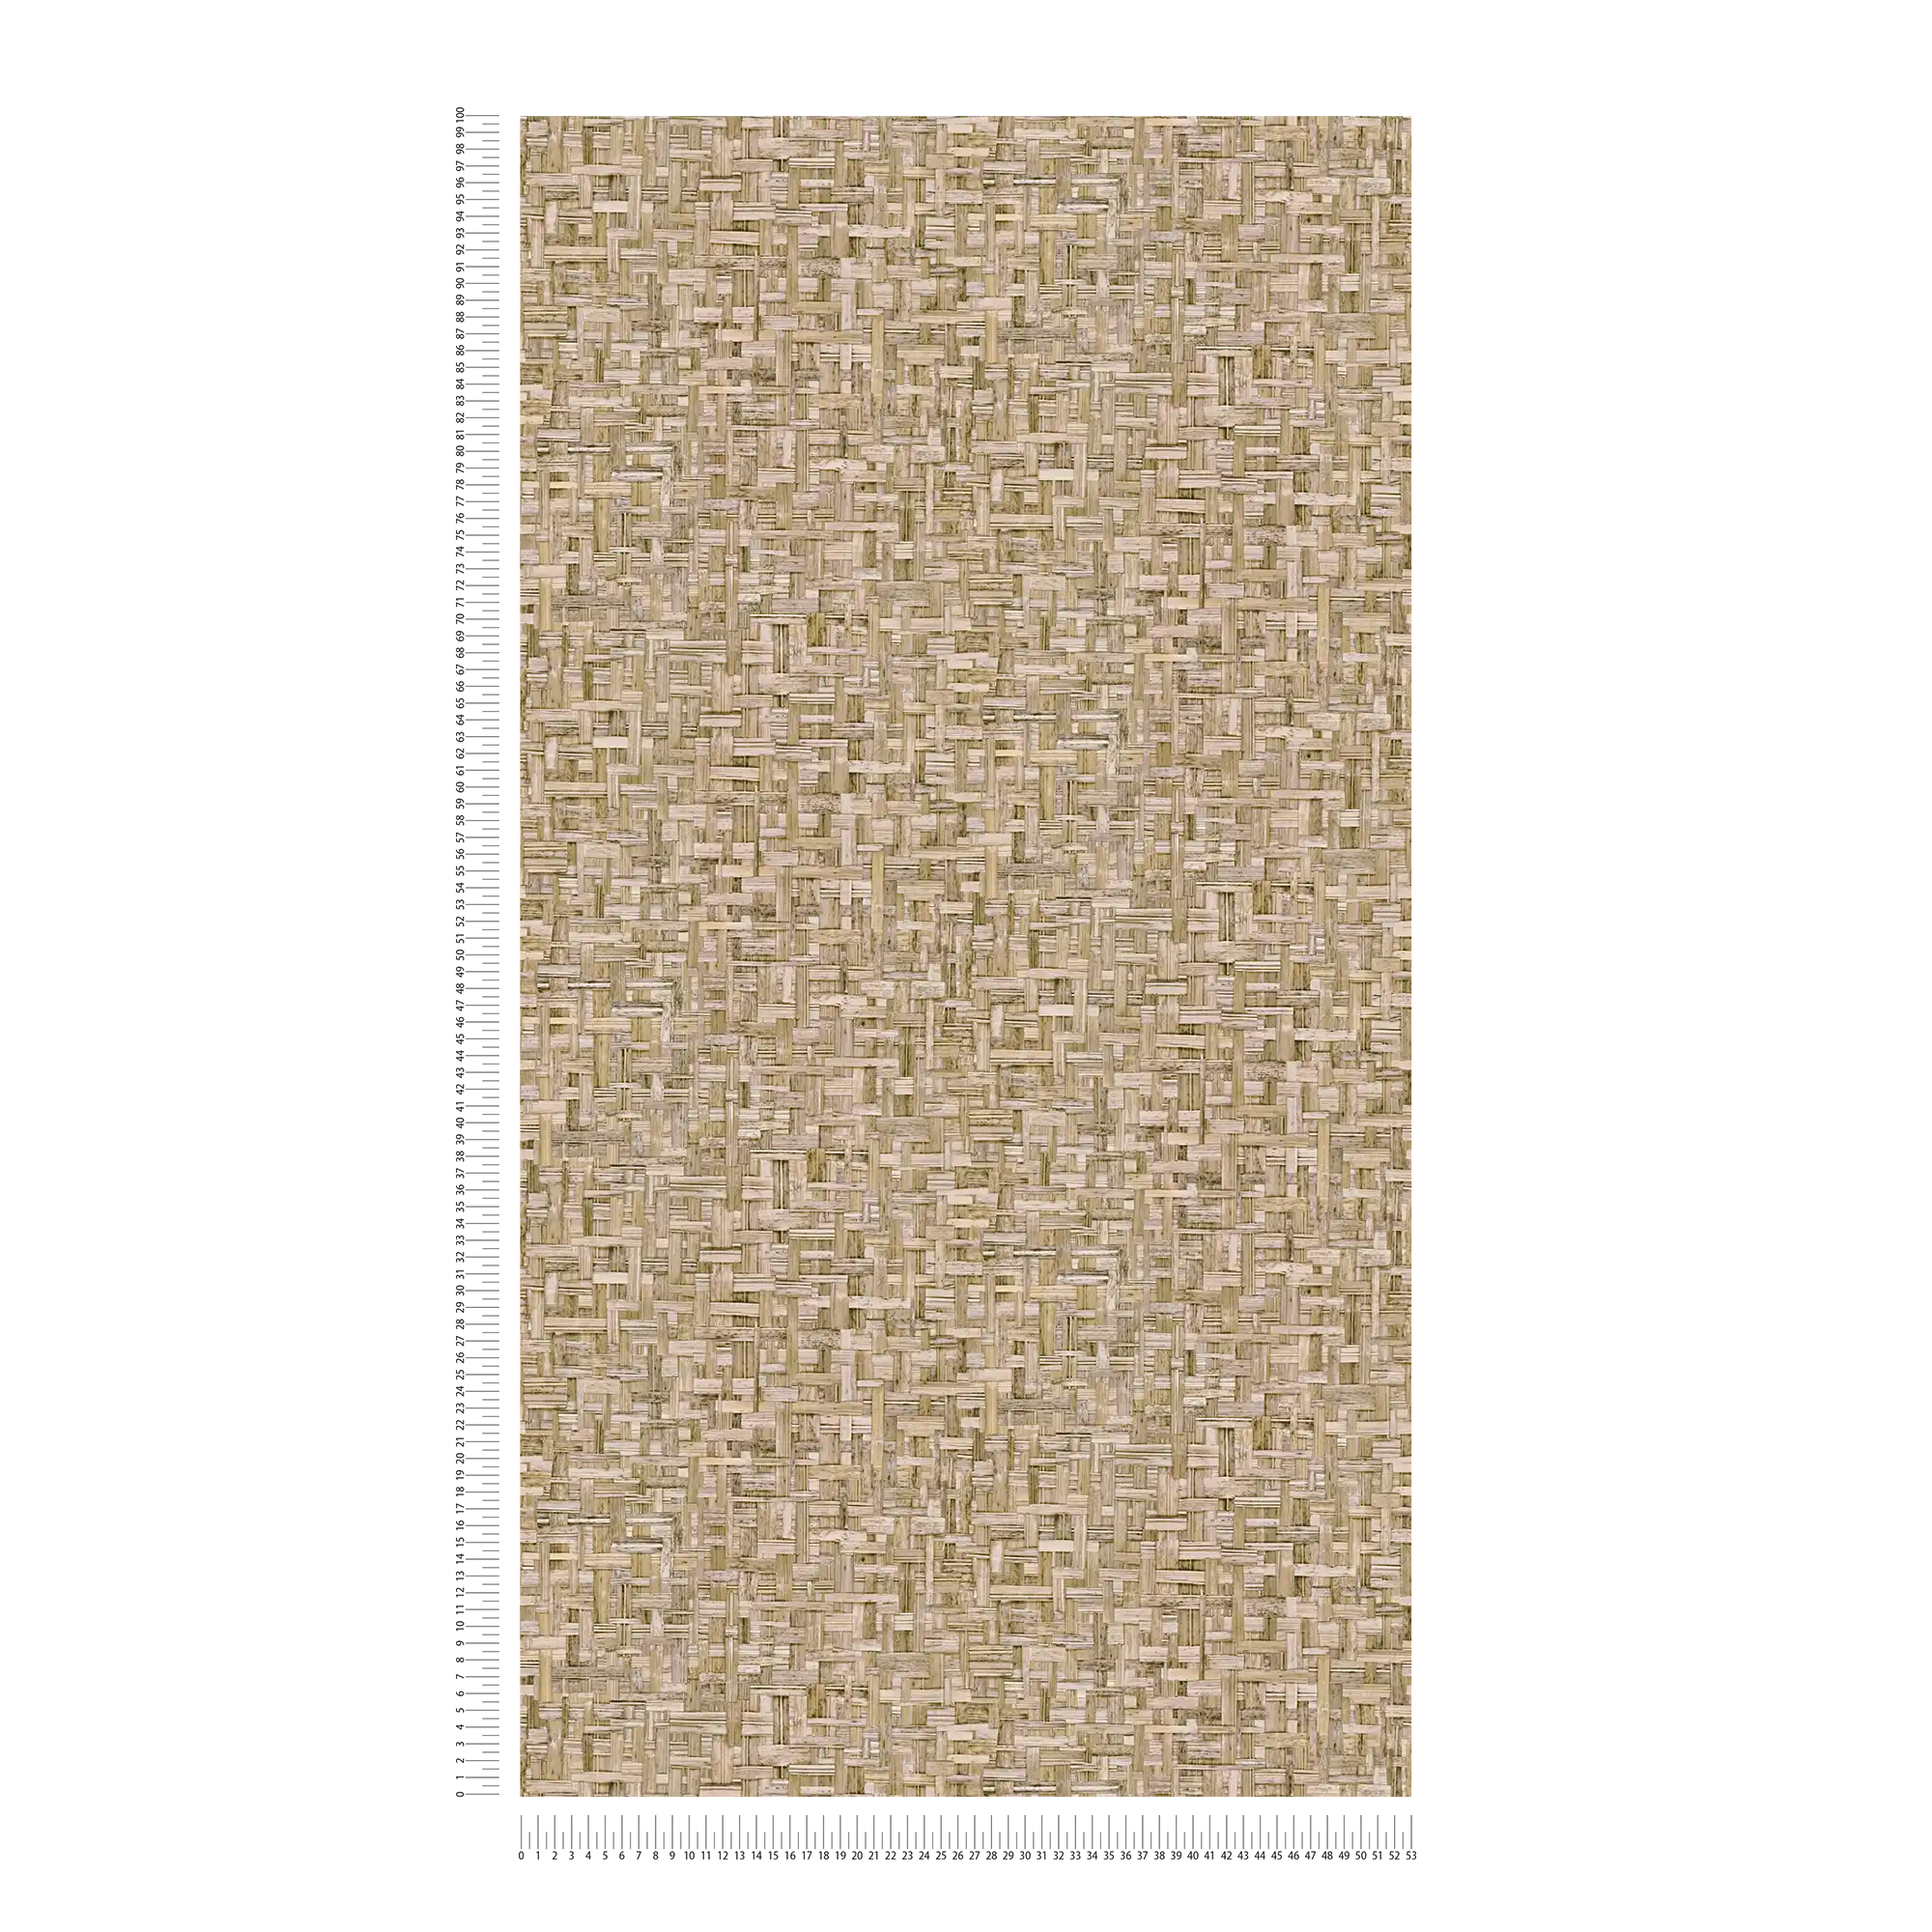             Carta da parati marrone chiaro effetto legno con motivo a fibre - marrone, beige
        